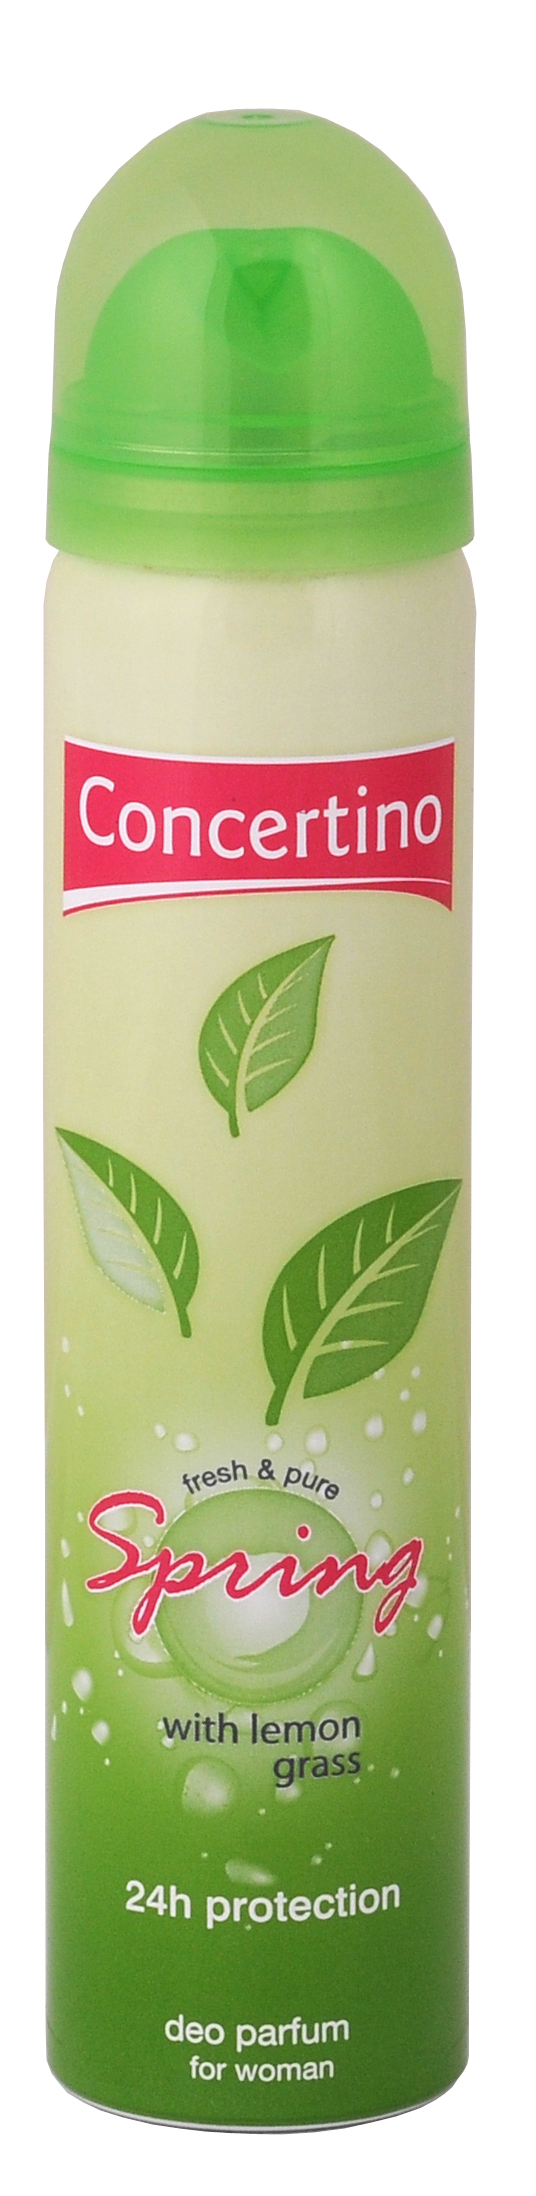 Concertino Spring Time, dezodorant, spray 75ml